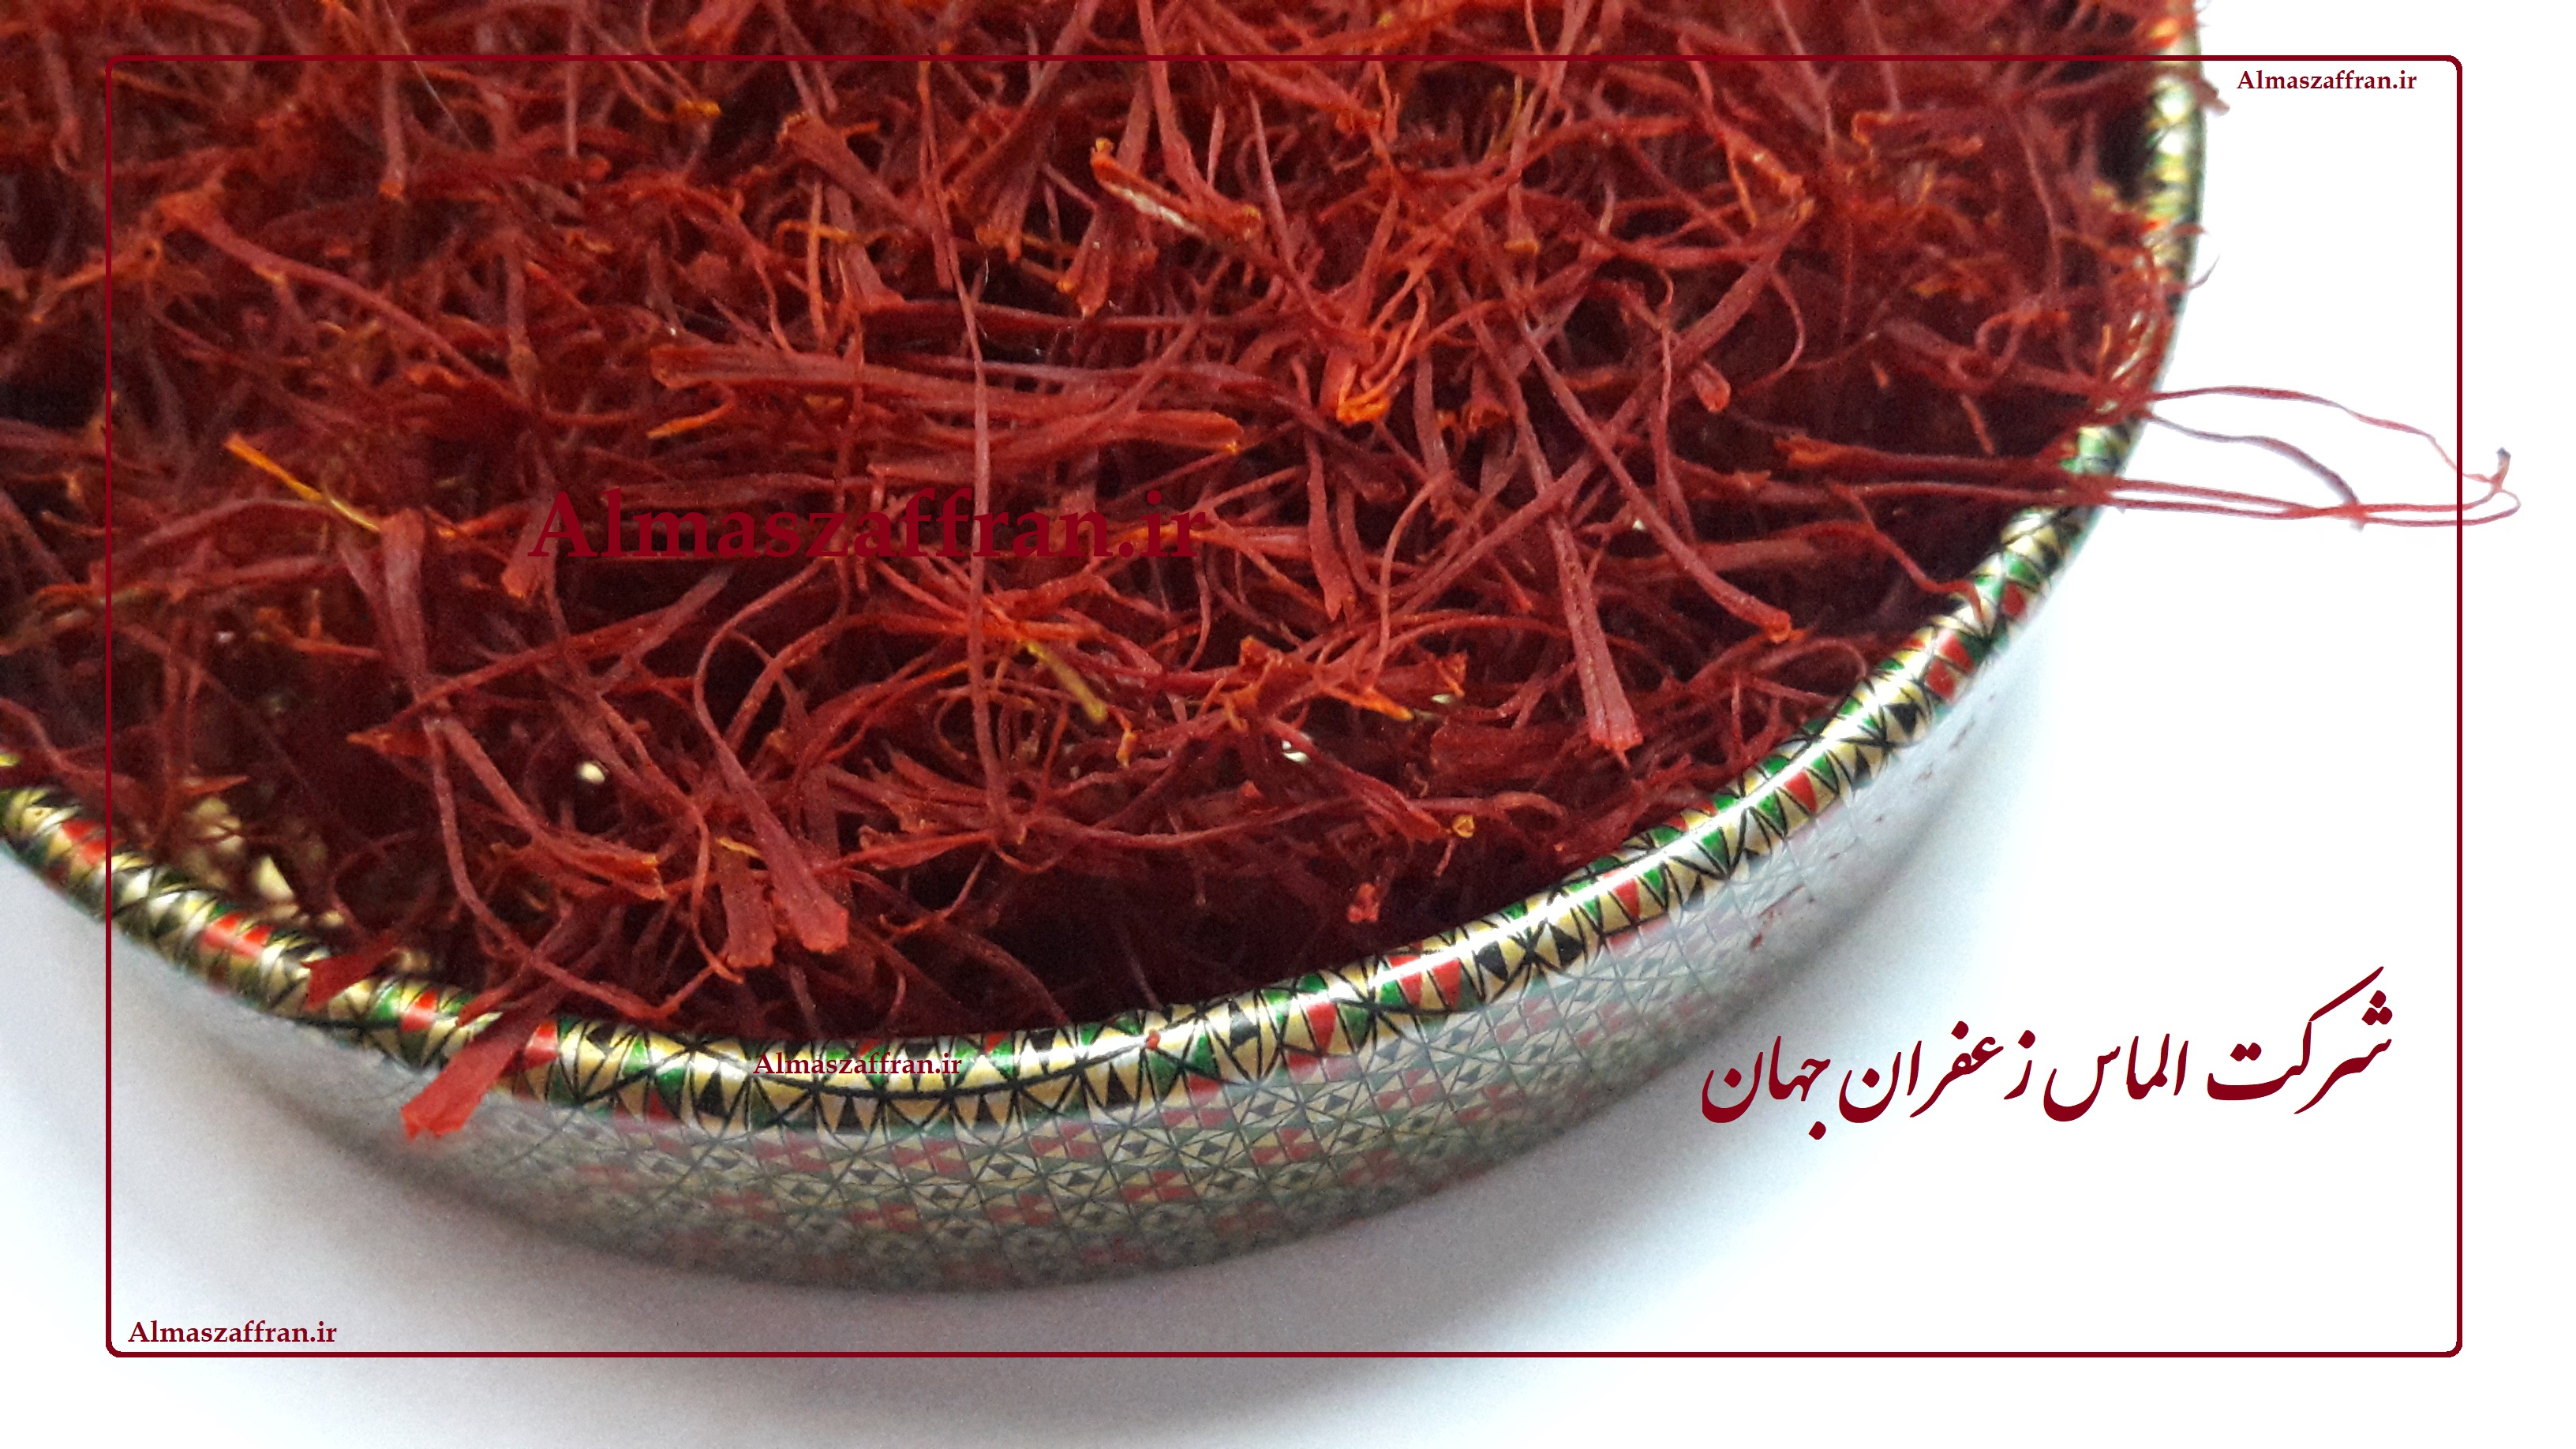 قیمت فروش هر کیلو زعفران ارگانیک در ایران